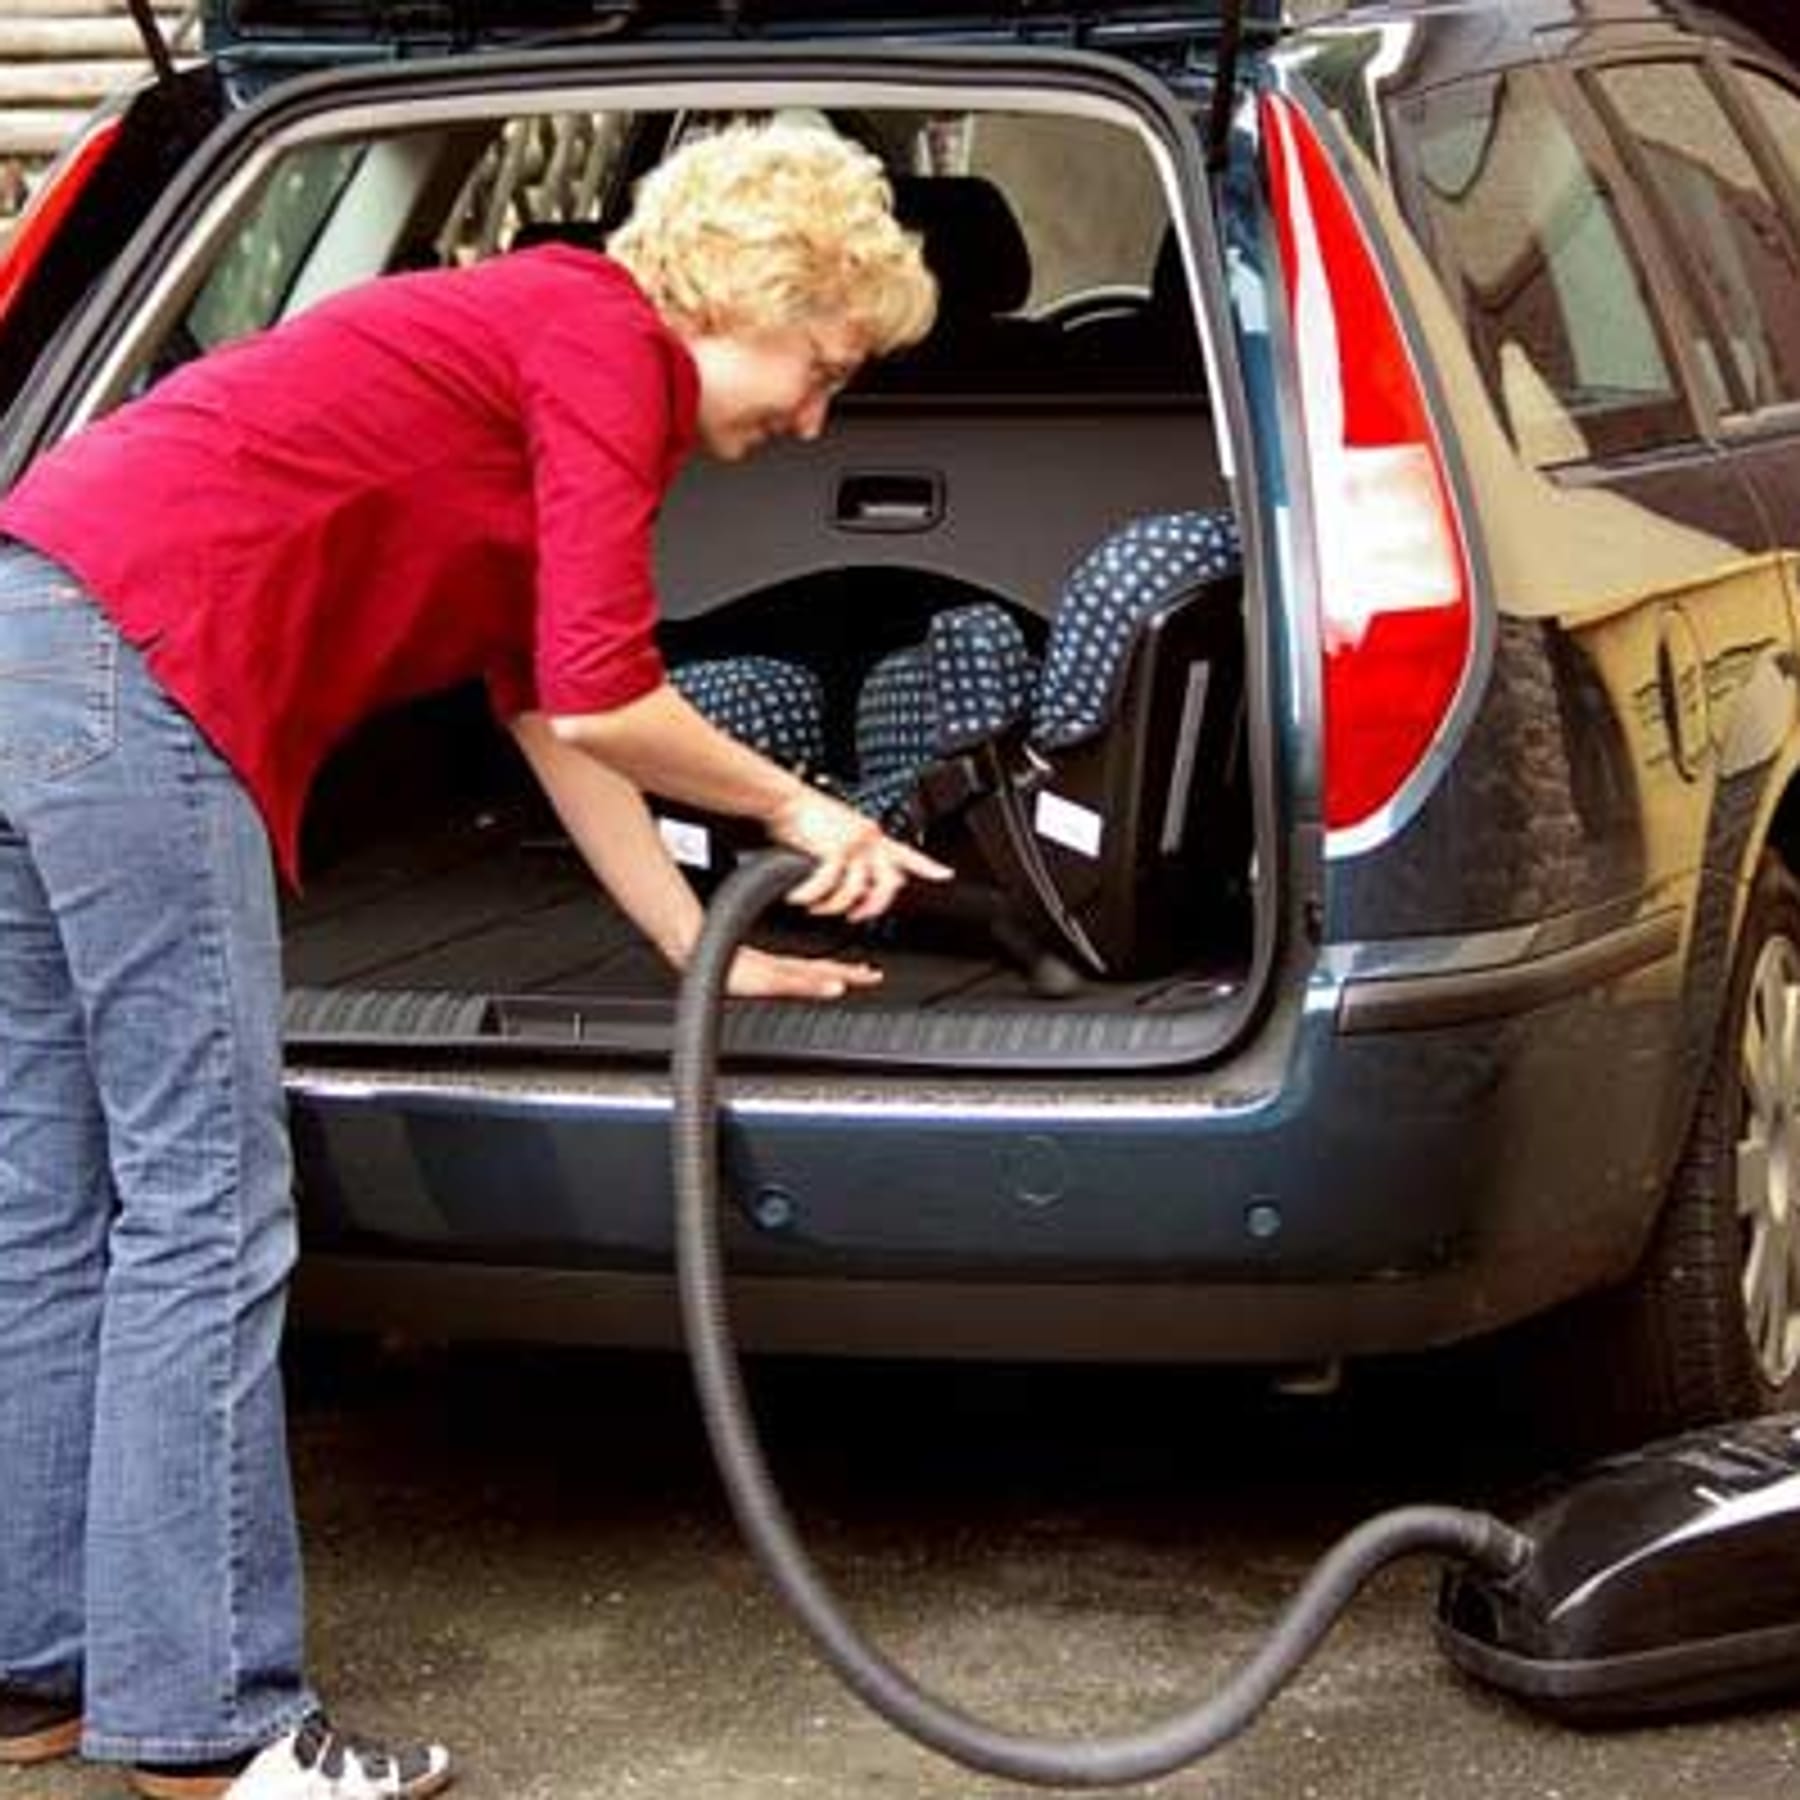 Autositze reinigen: Machen Sie fleckige Ledersitze und stark verschmutztes  Autopolster mühelos sauber!